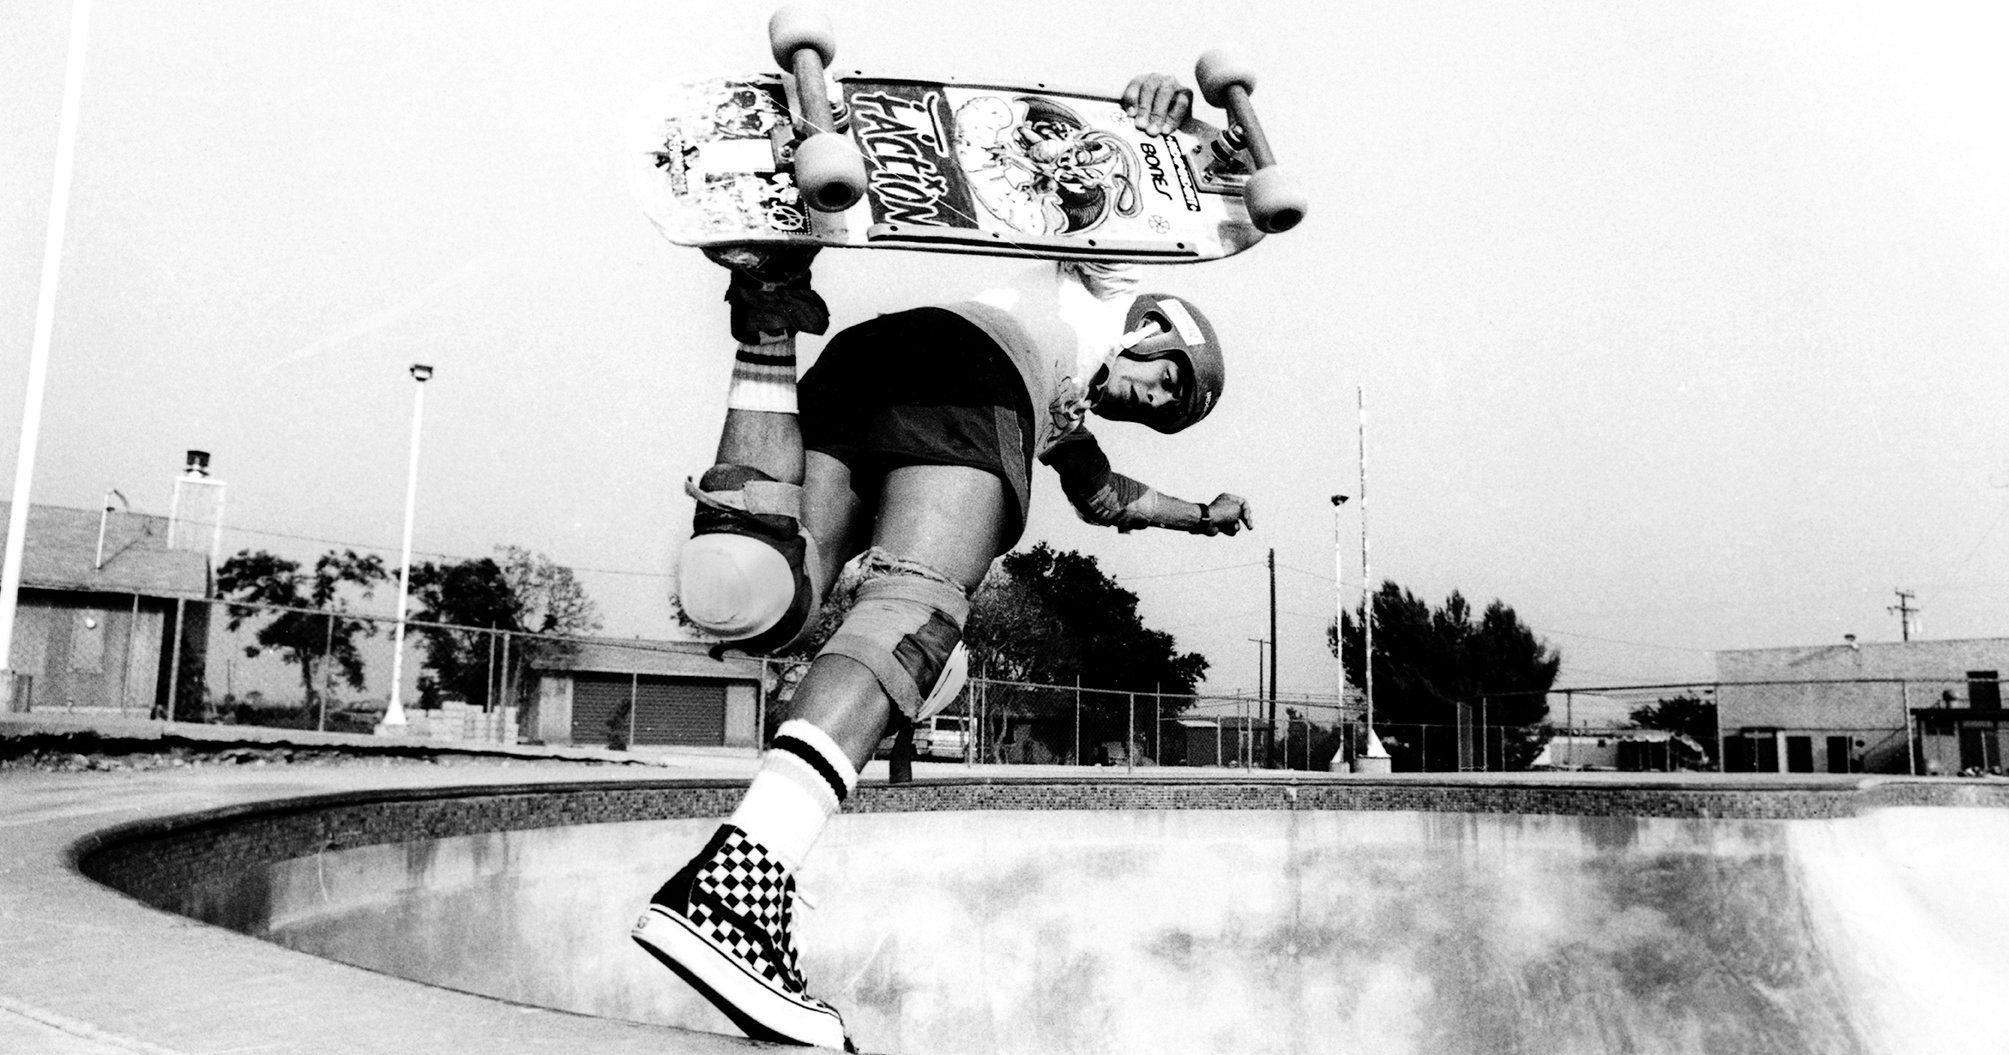 Checkered Vans Skateboard Logo - Steve Van Doren and Tony Alva on the Early Days of Vans | Time.com